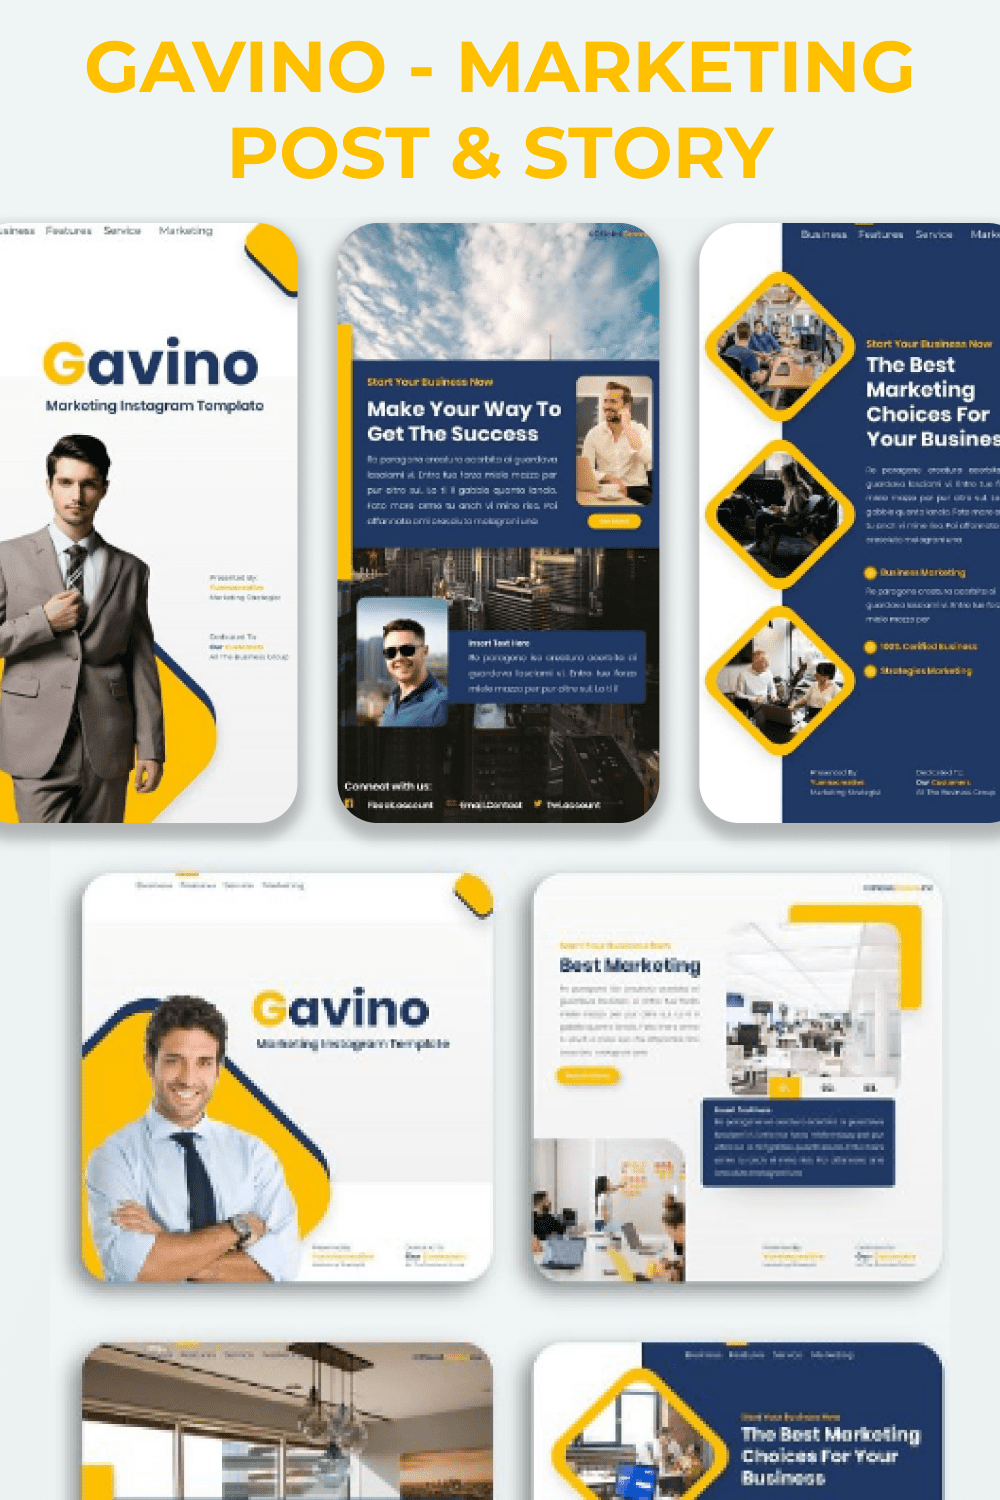 Gavino - Marketing Post & Story Pinterest.